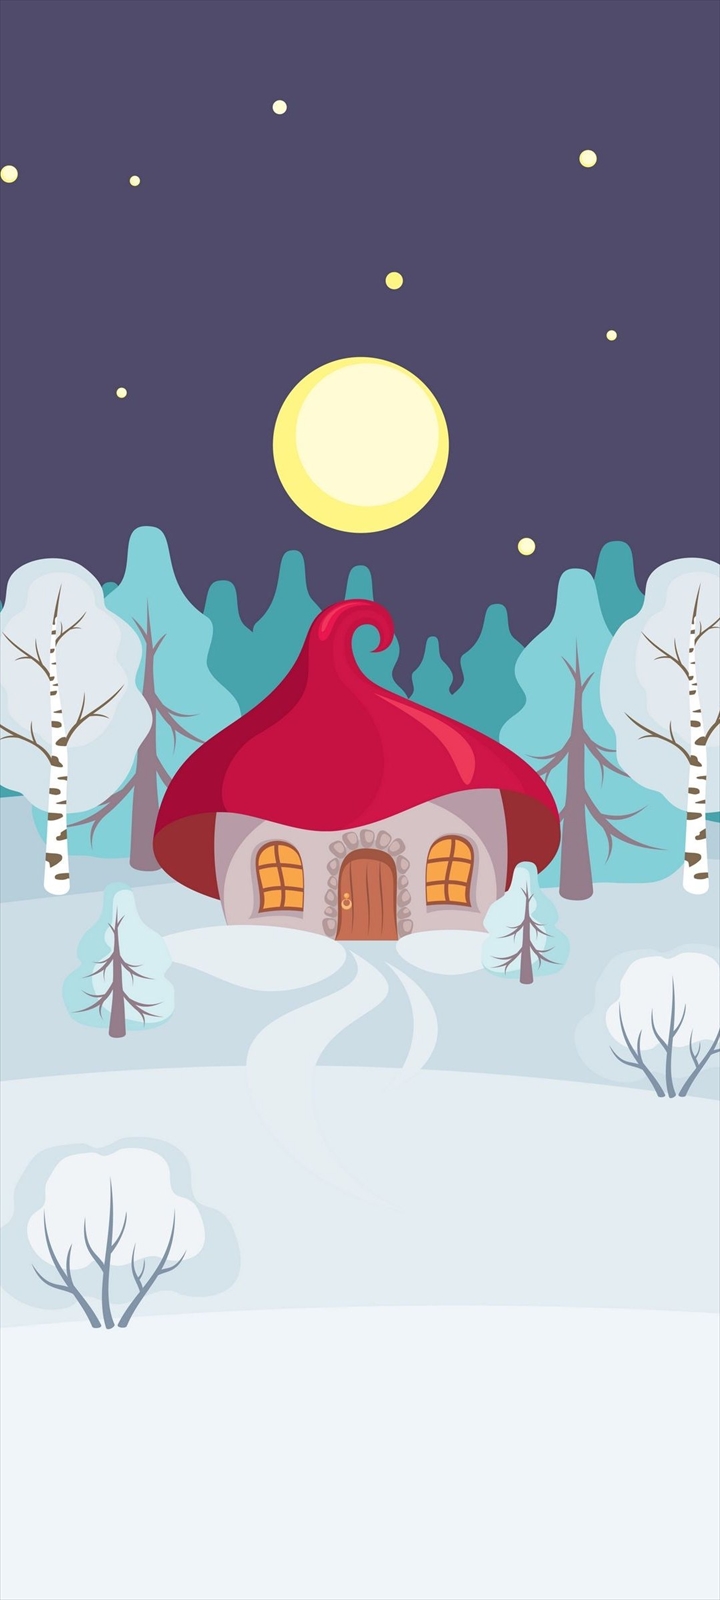 月と赤い屋根の家と雪の大地のイラスト Galaxy A32 5g 壁紙 待ち受け スマラン